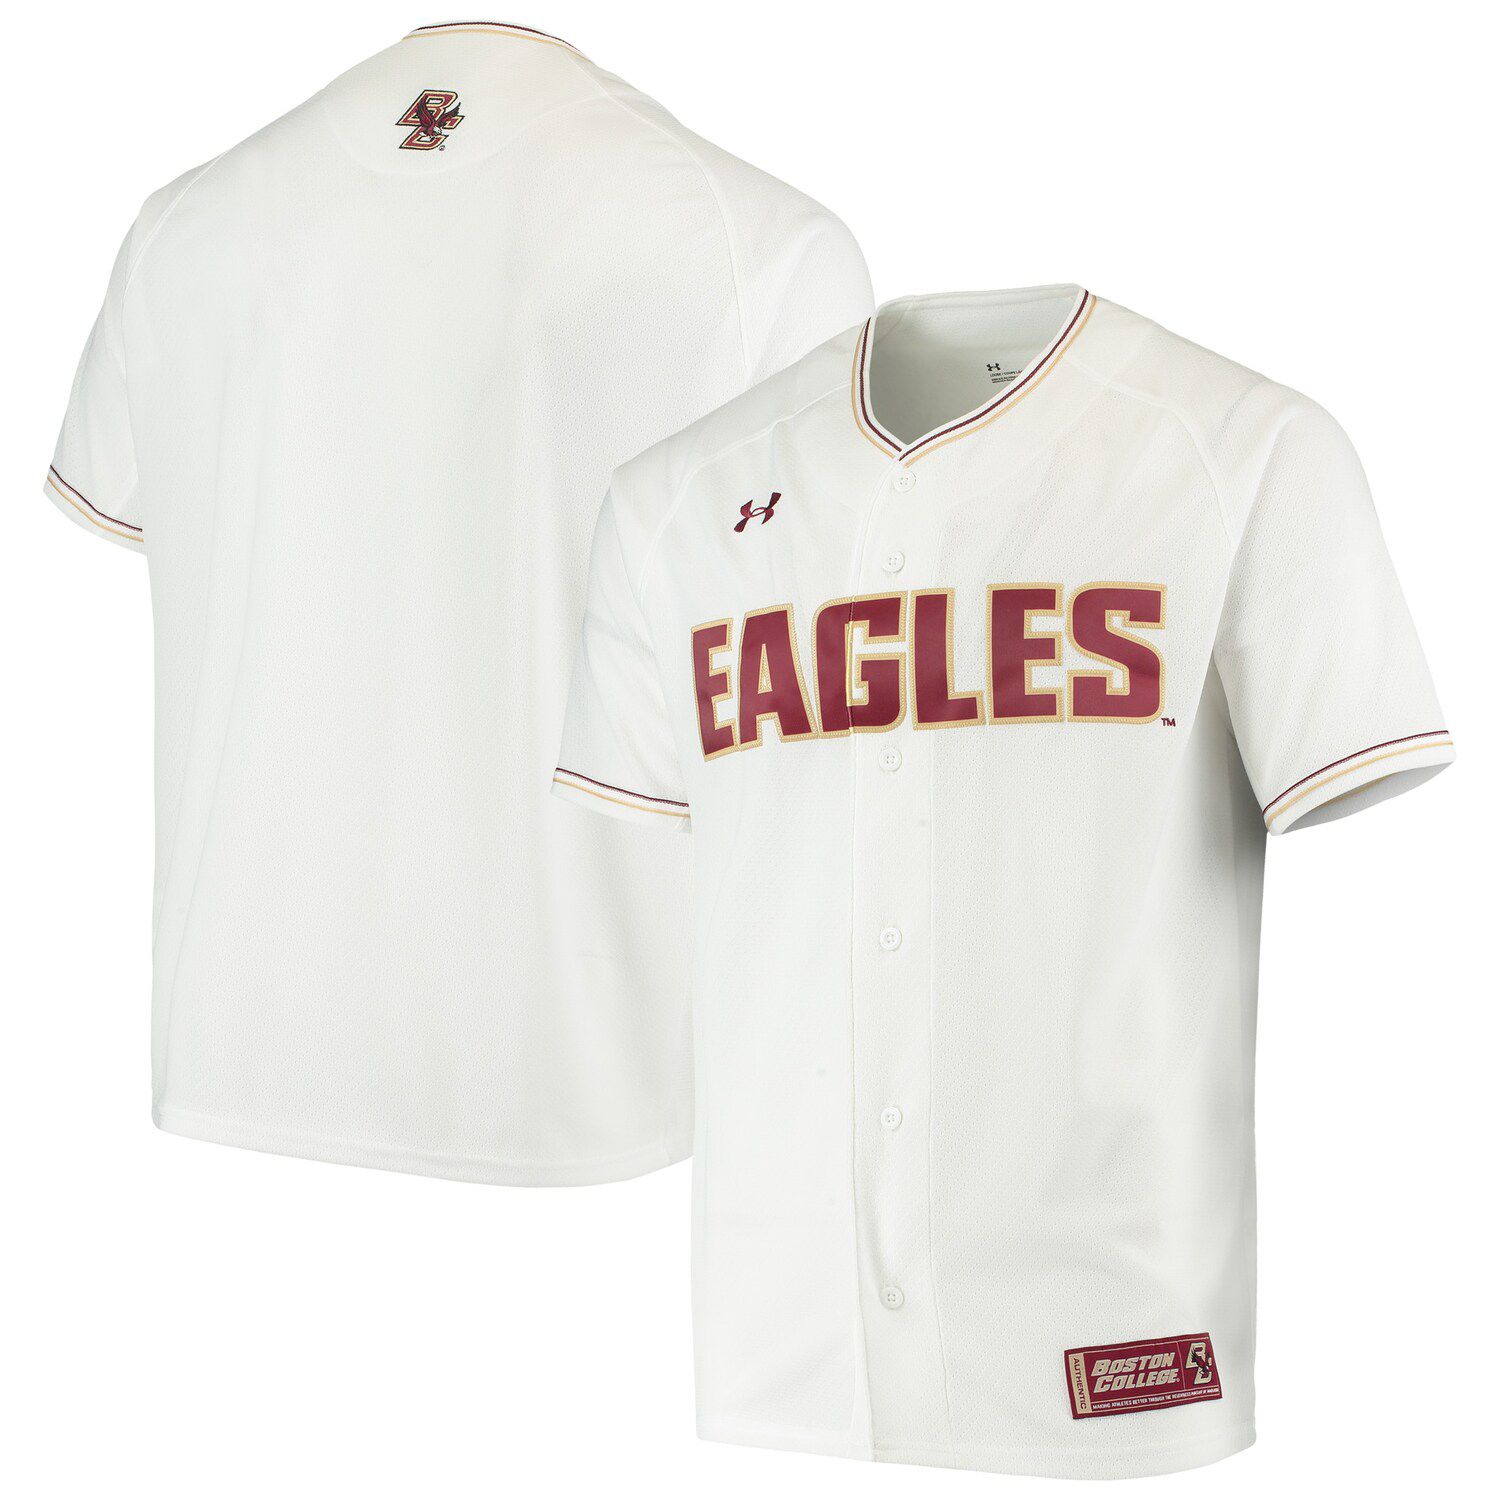 eagles baseball jersey